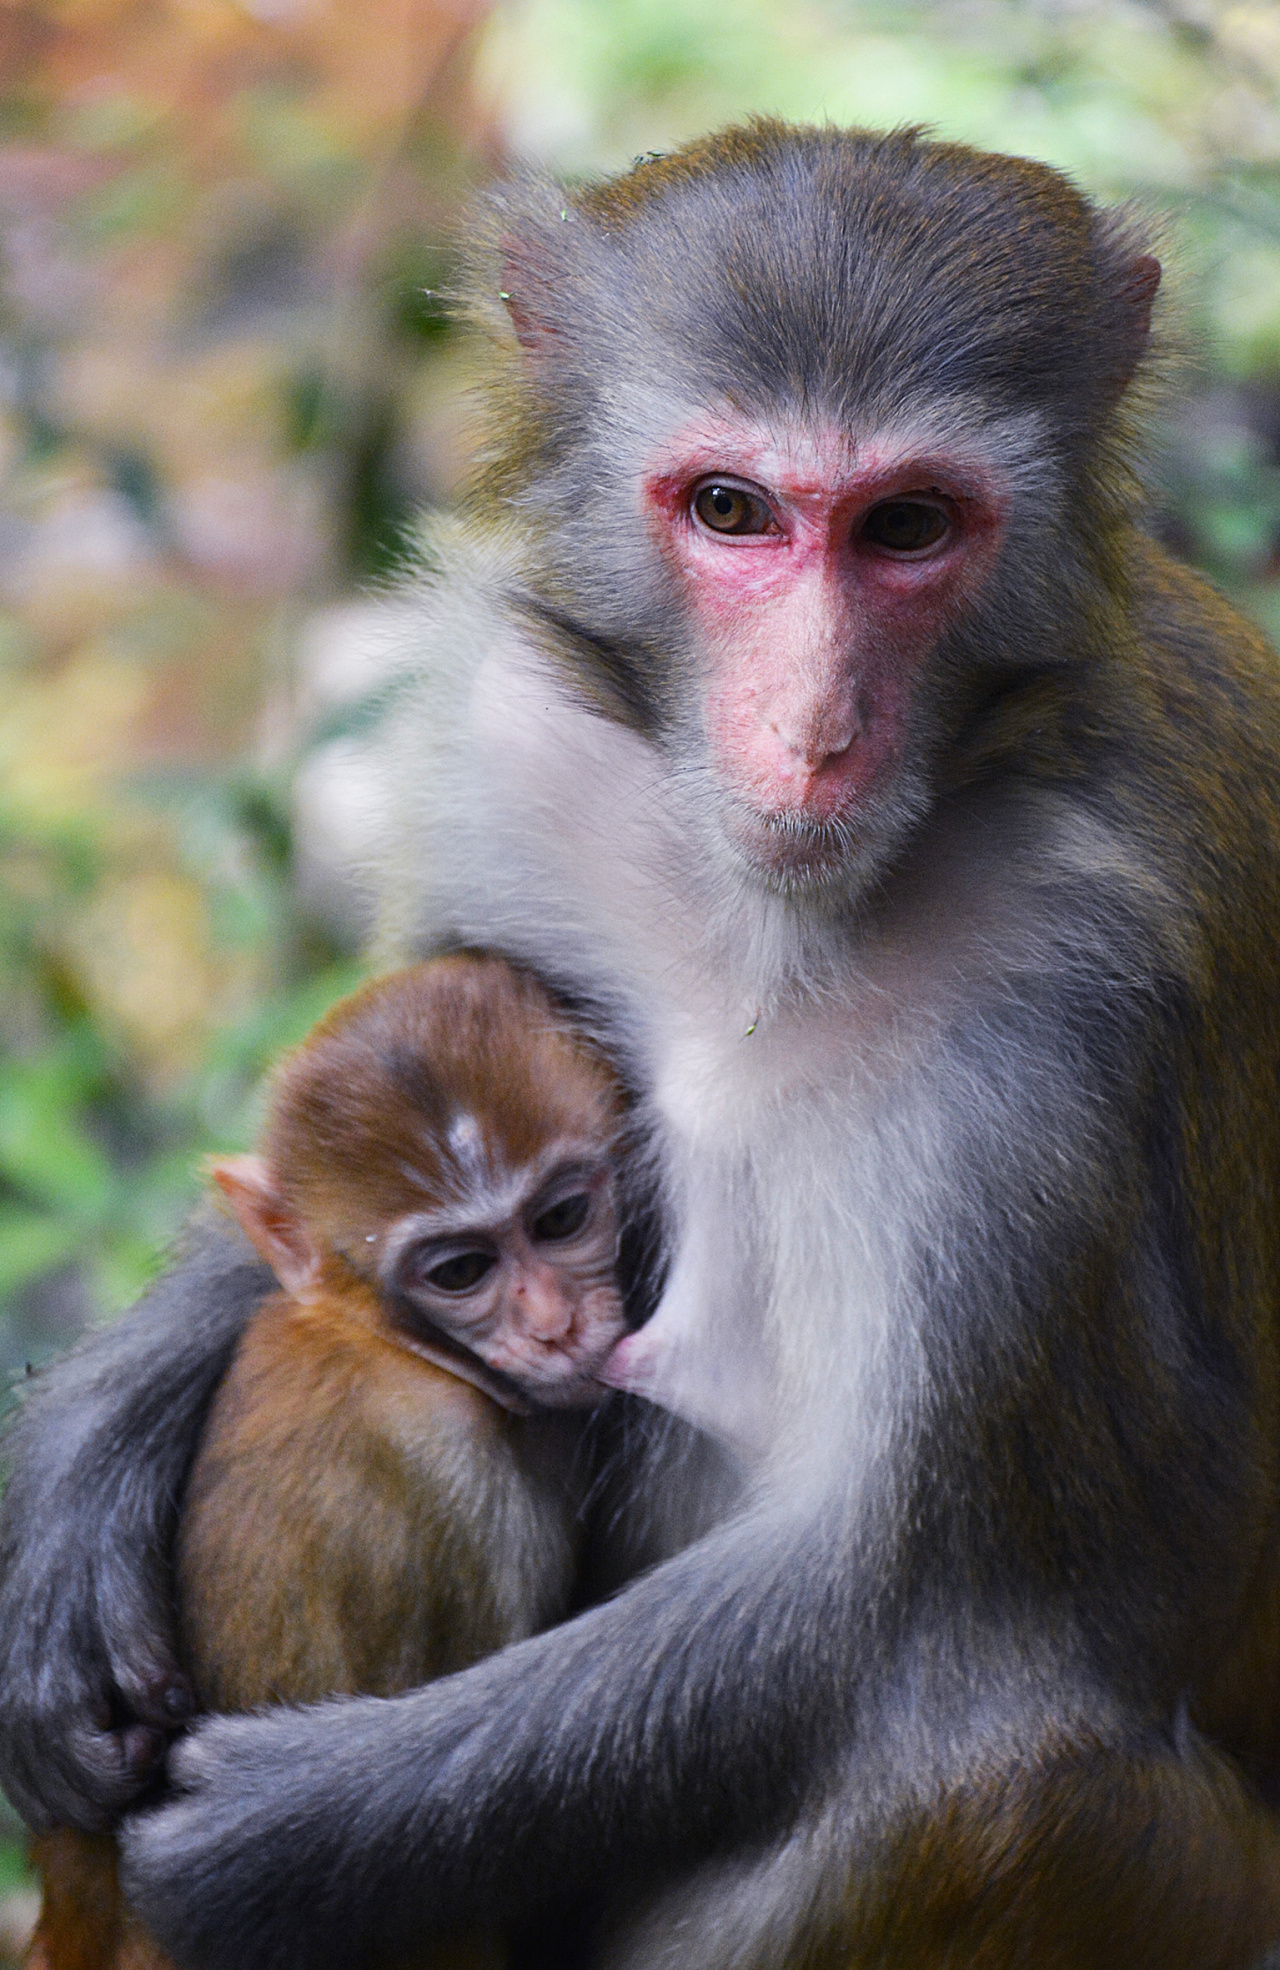 世上最小的猴子 南美洲树林间蹿跳自如 人们称它为“松鼠猴”